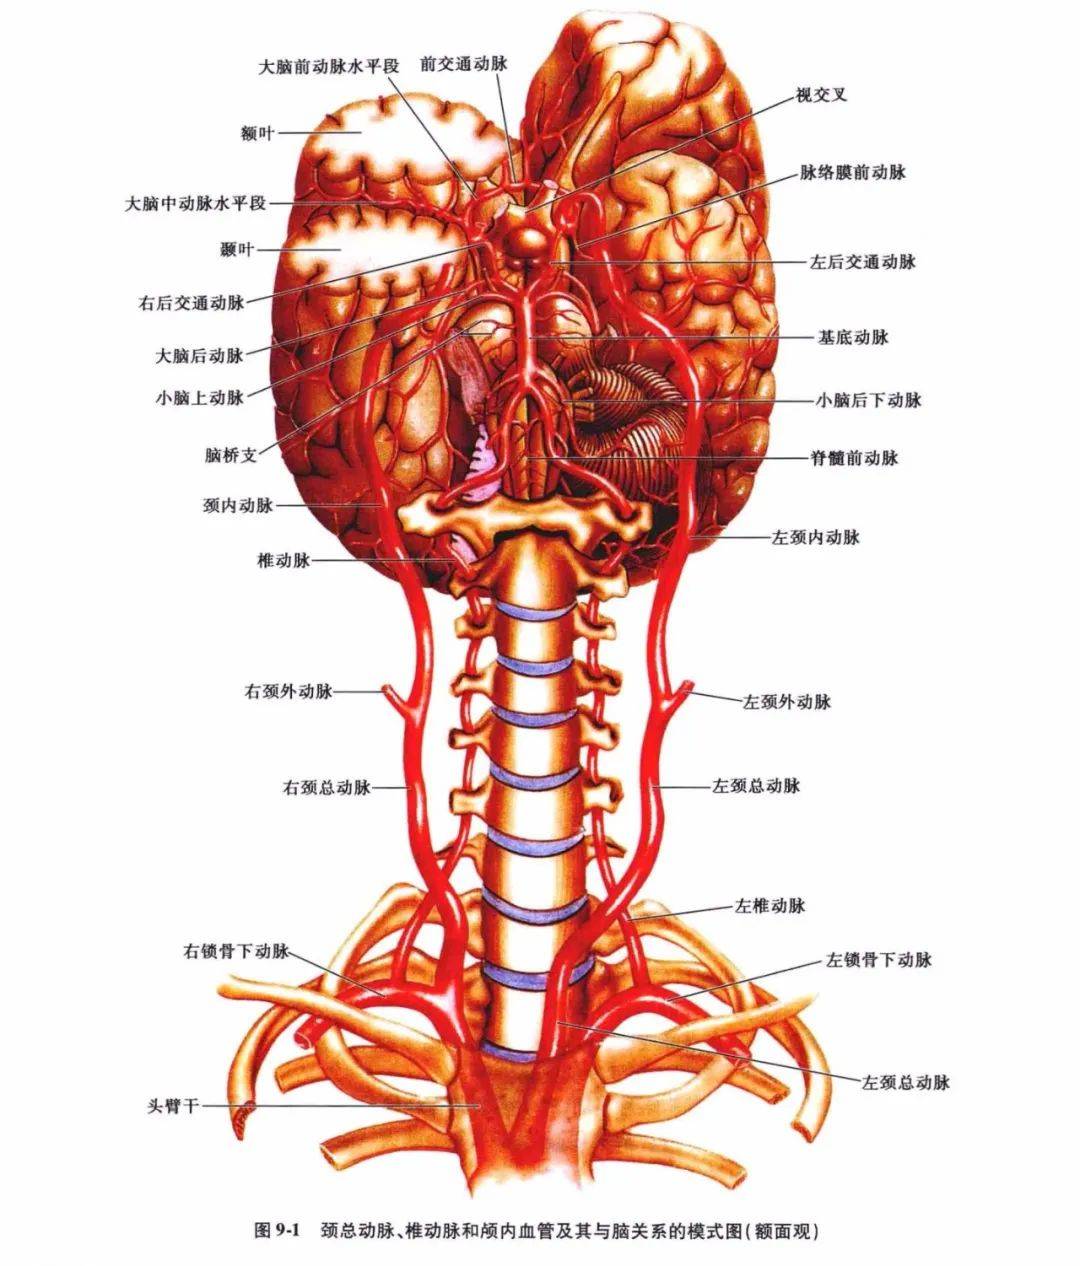 中枢神经系统疾病定位诊断图解脑血管非常详细值得收藏